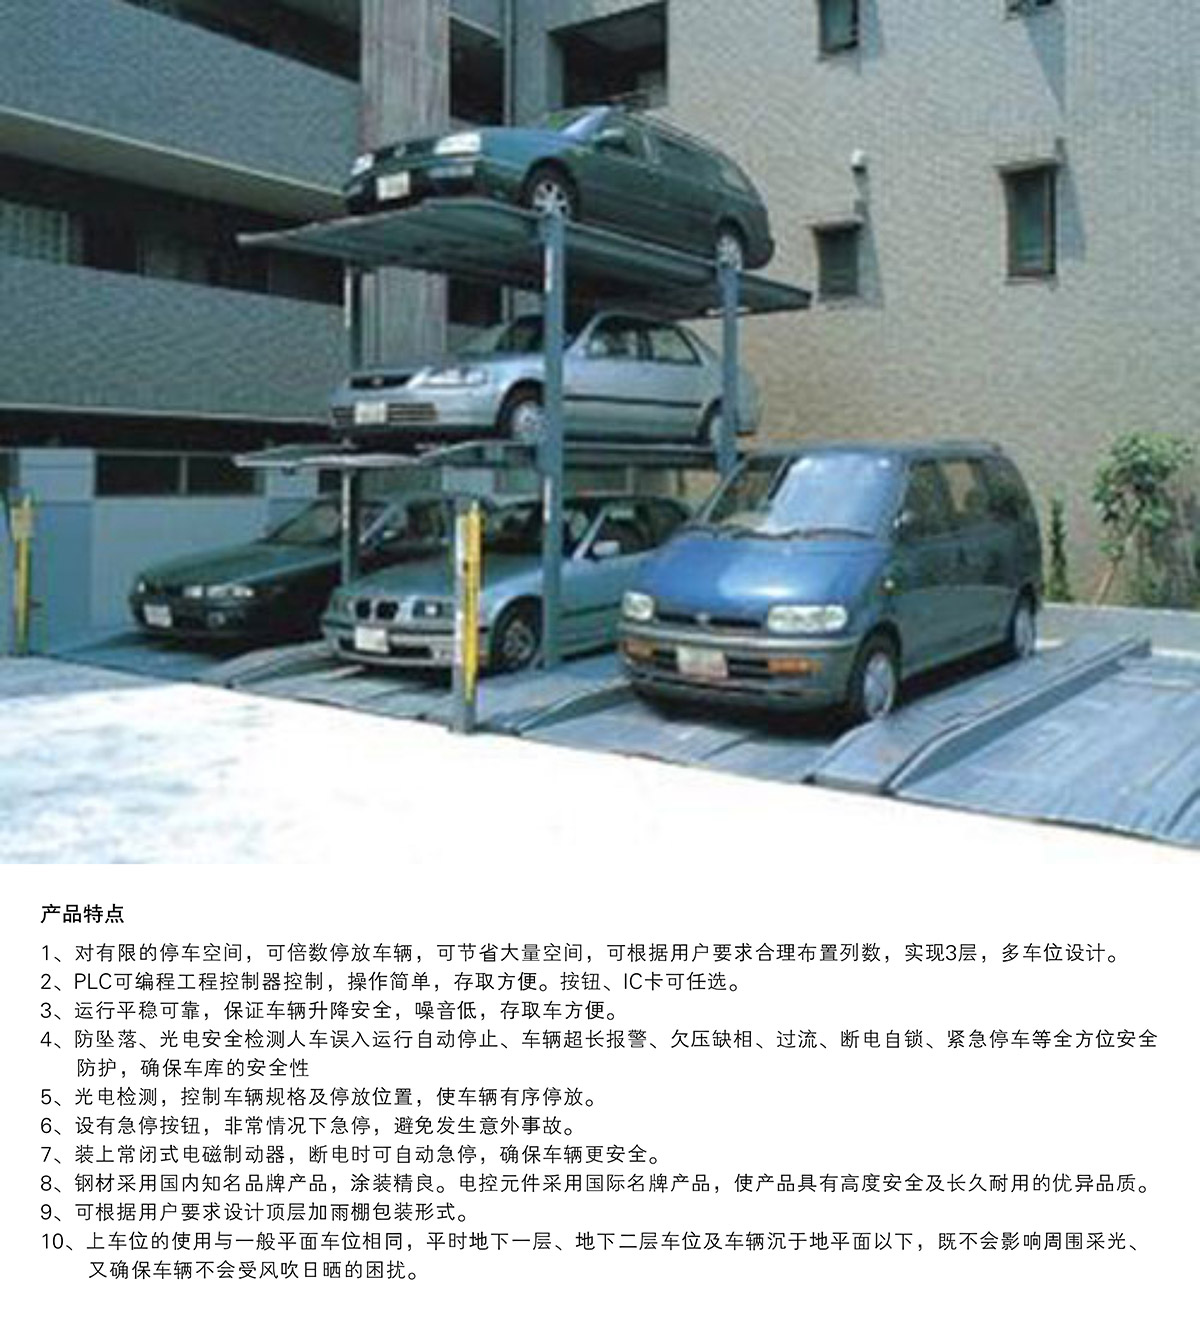 机械车库PJS3D2三层地坑简易升降停车设备产品特点.jpg